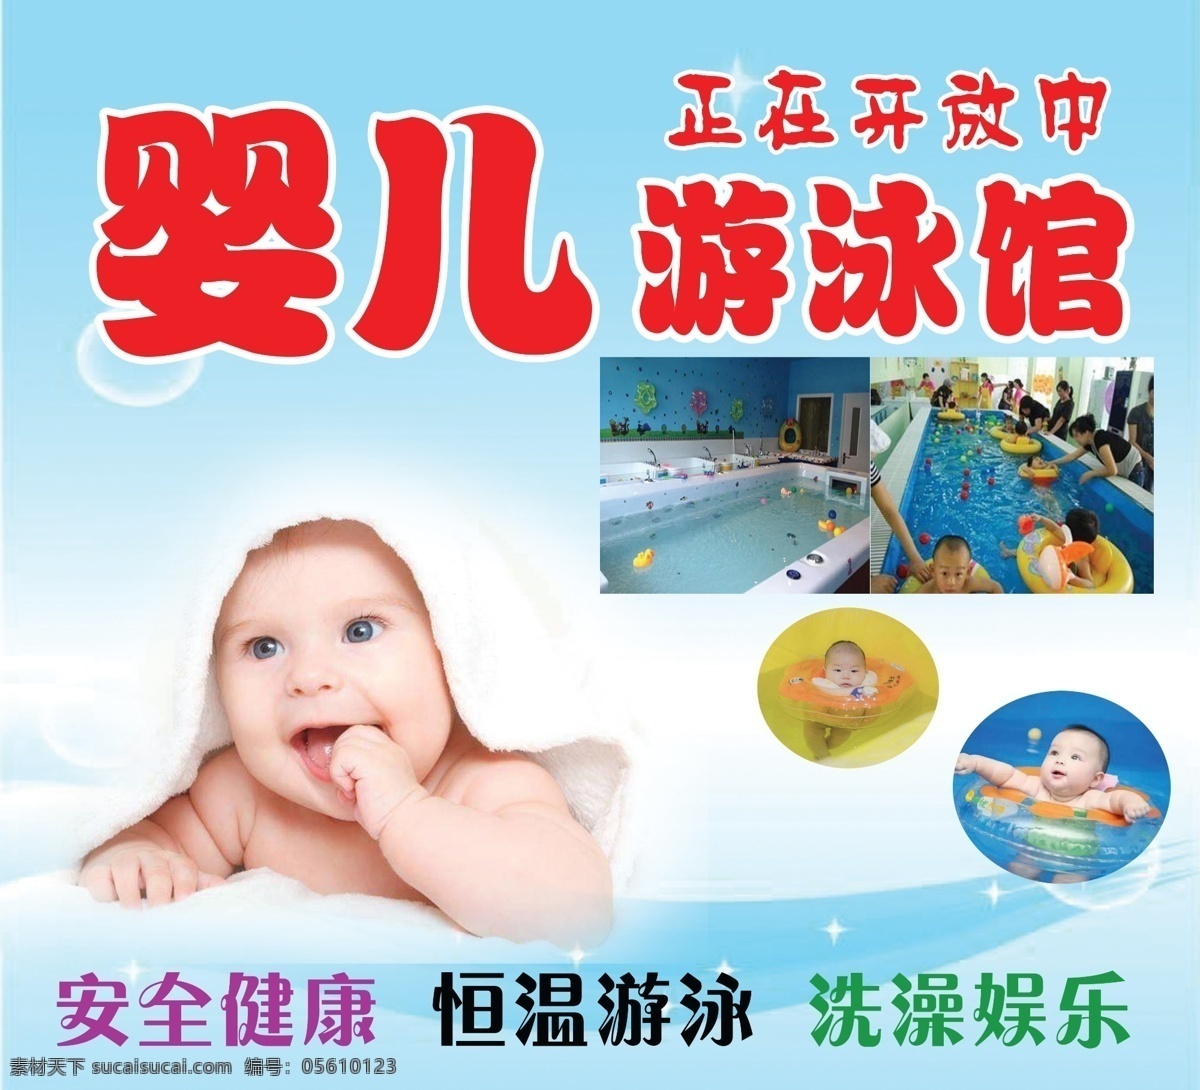 婴儿游泳馆 游 泳 馆 海报 游泳馆海报 宣传海报